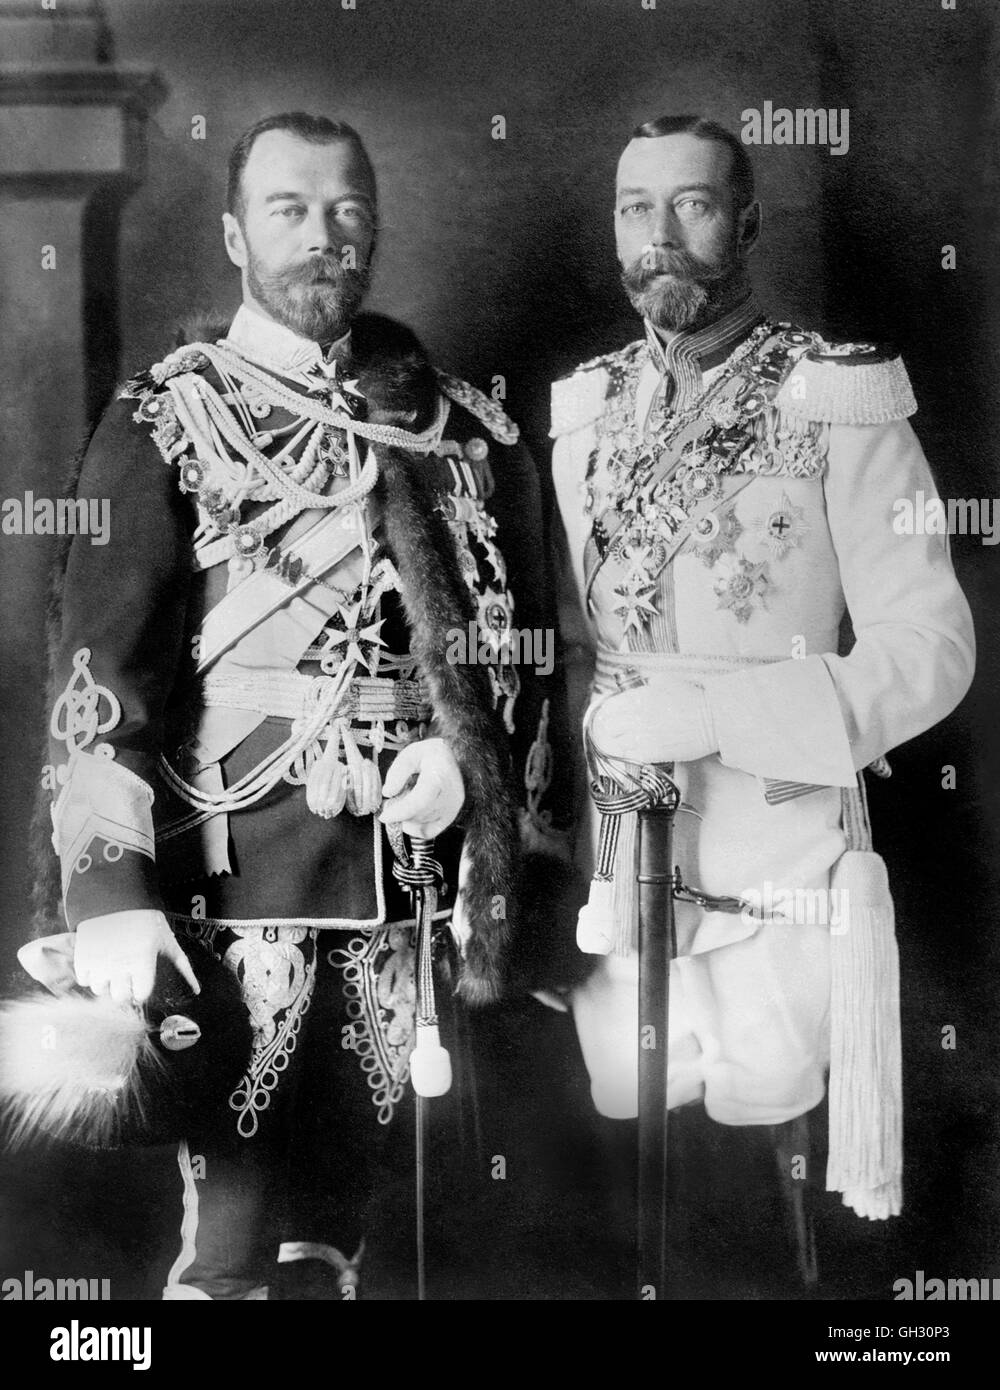 George V et le Tsar Nicolas II. Portrait du roi George V (1865-1936) et le Tsar Nicolas II (1868-1918). Photo de Bains News Service, c.1913. Banque D'Images